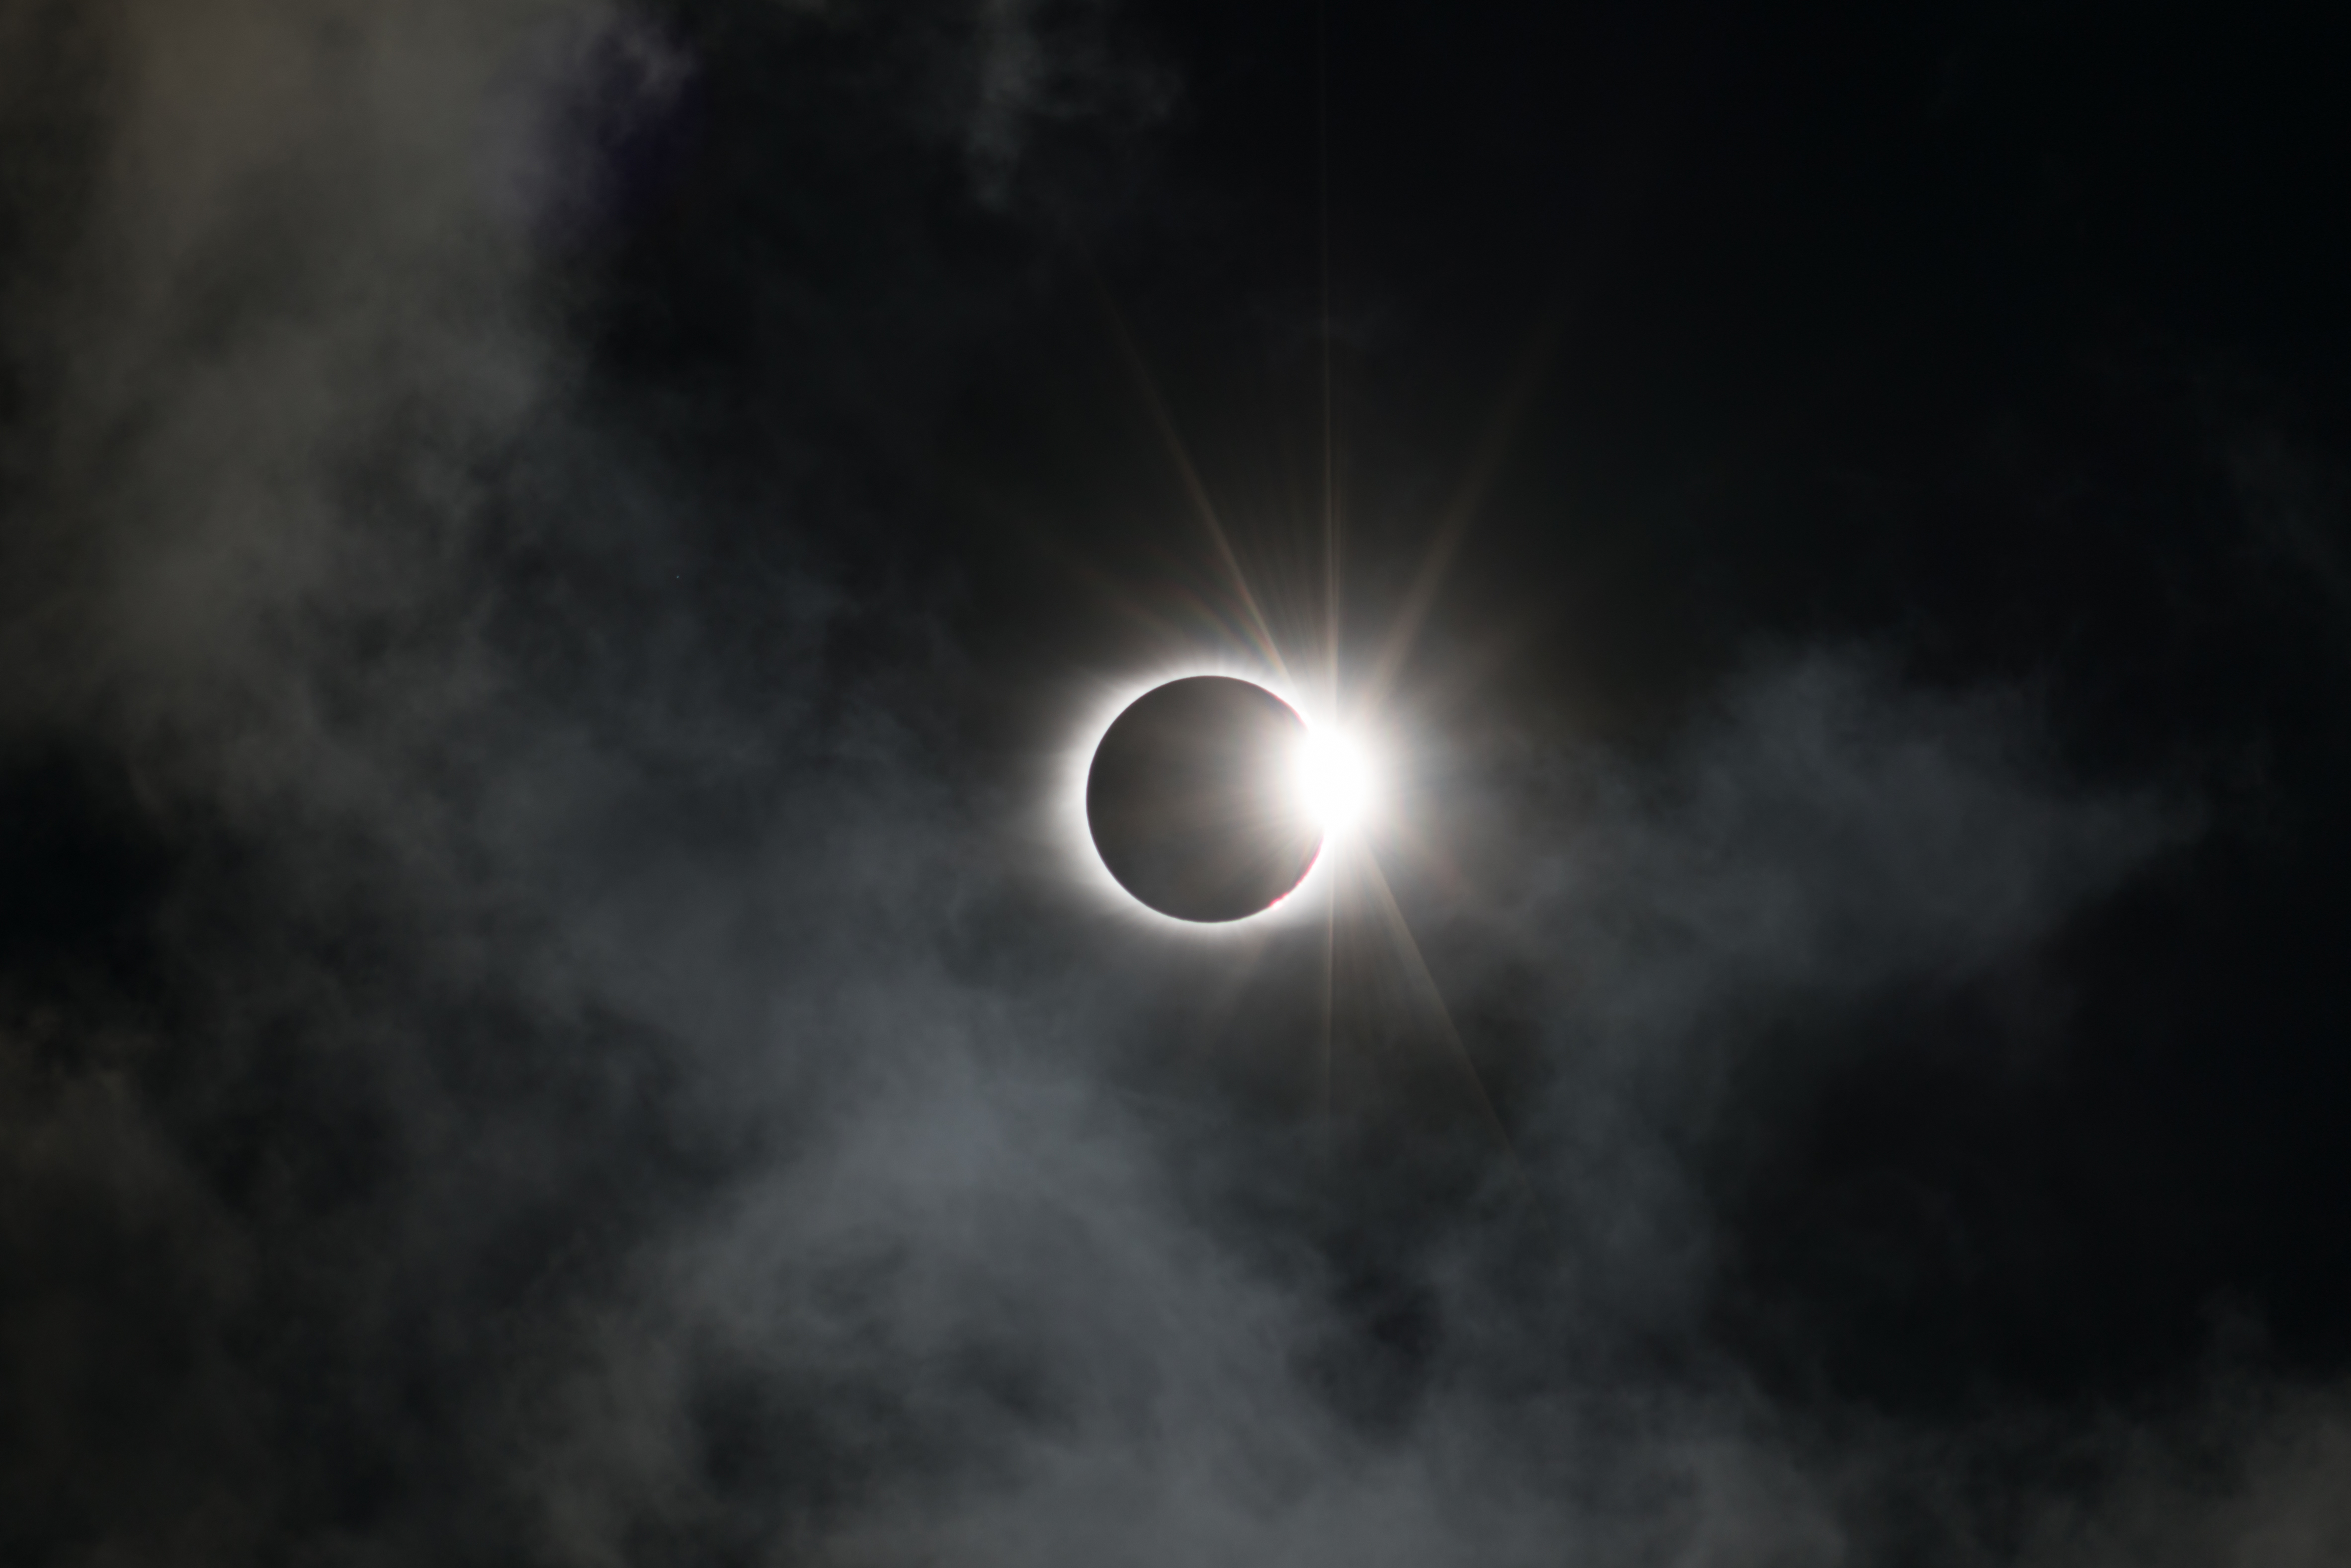 La astrología nos dice cómo aprovechar la energía del eclipse solar.